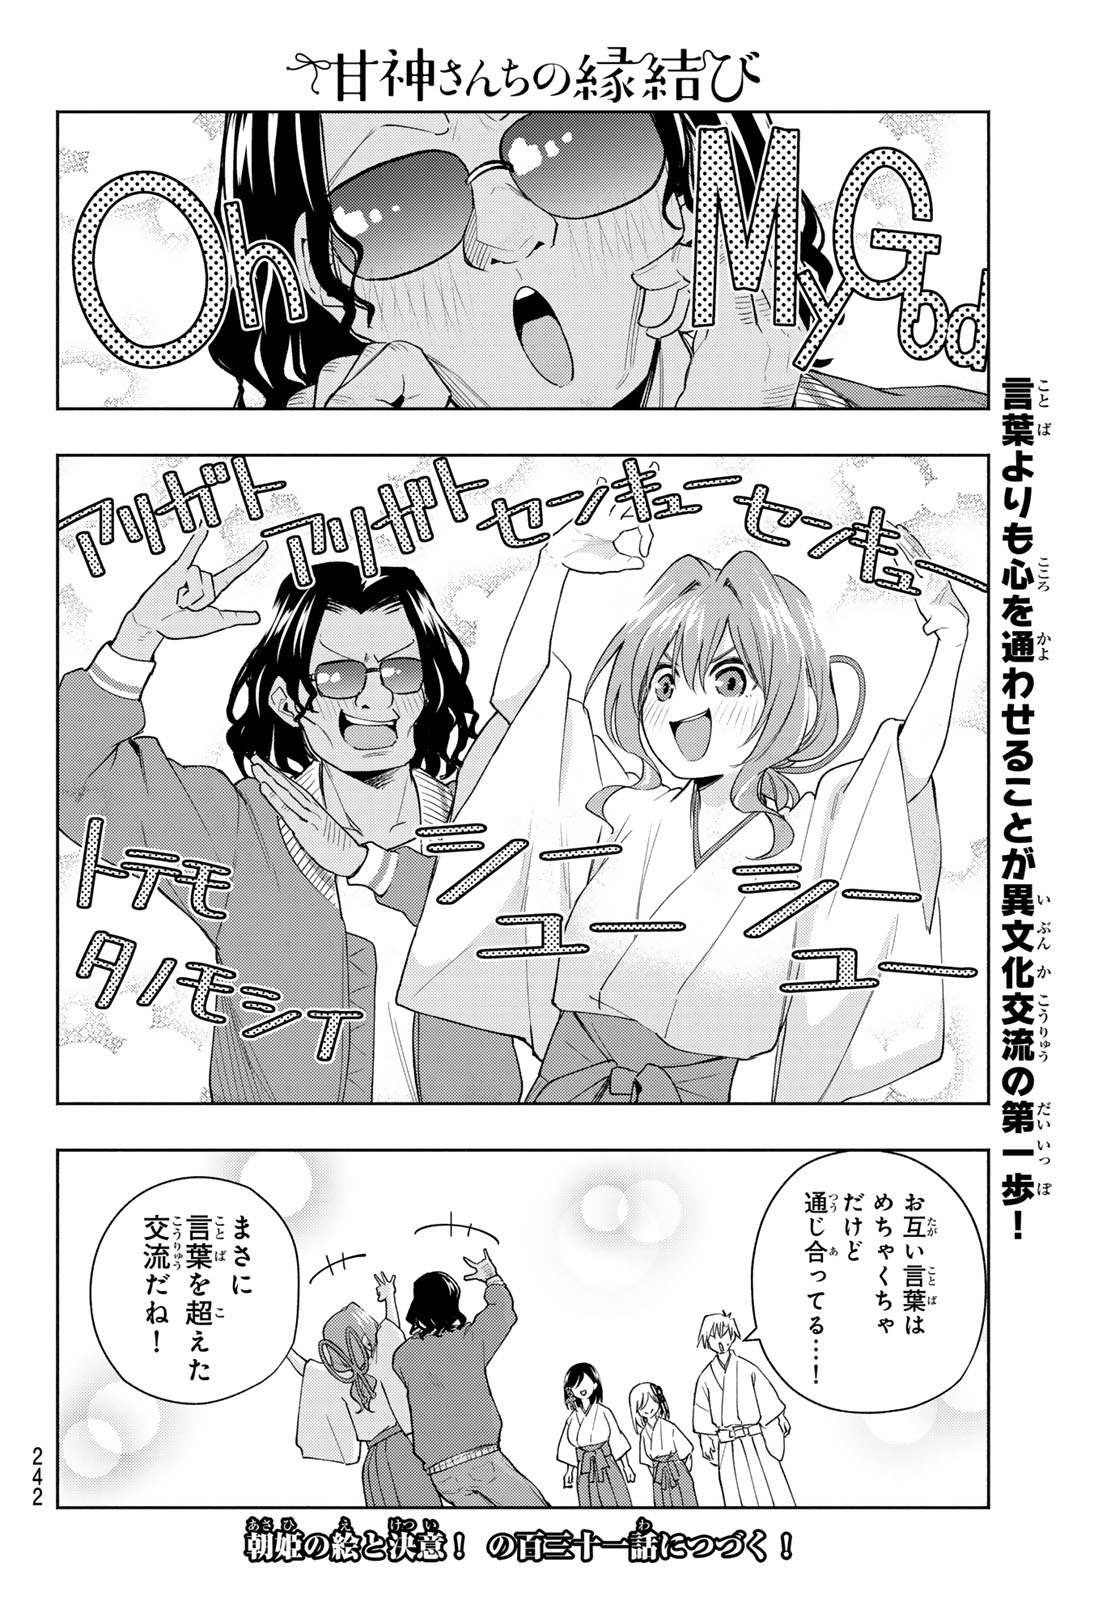 Amagami-san Chi no Enmusubi - Chapter 130 - Page 20